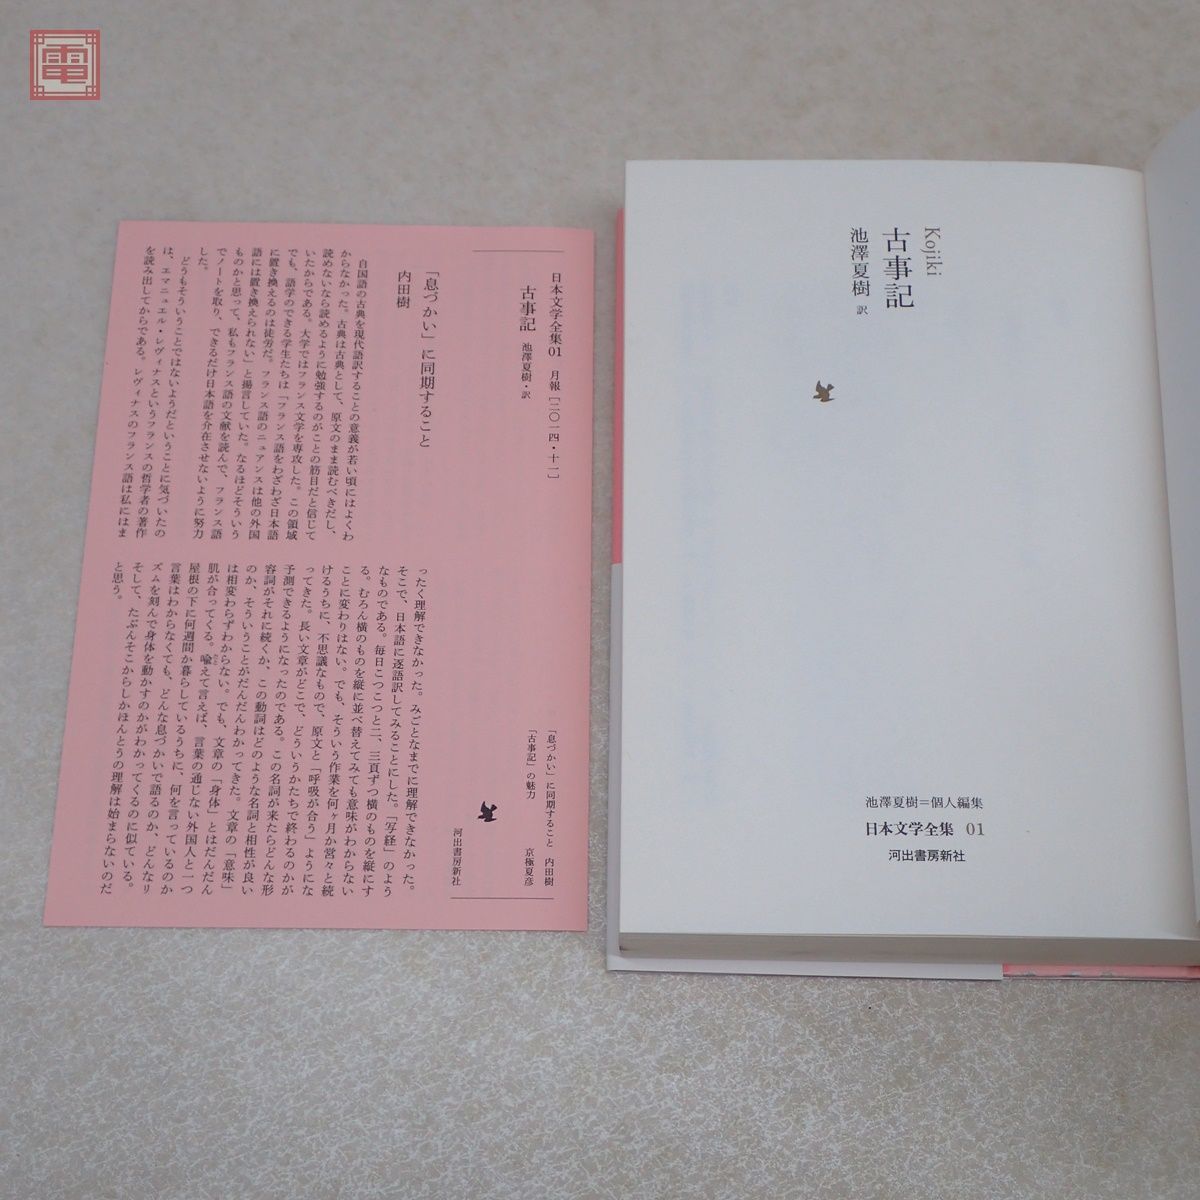 日本文学全集 全30巻揃 月報揃 池澤夏樹=個人編集 河出書房新社 おまけ